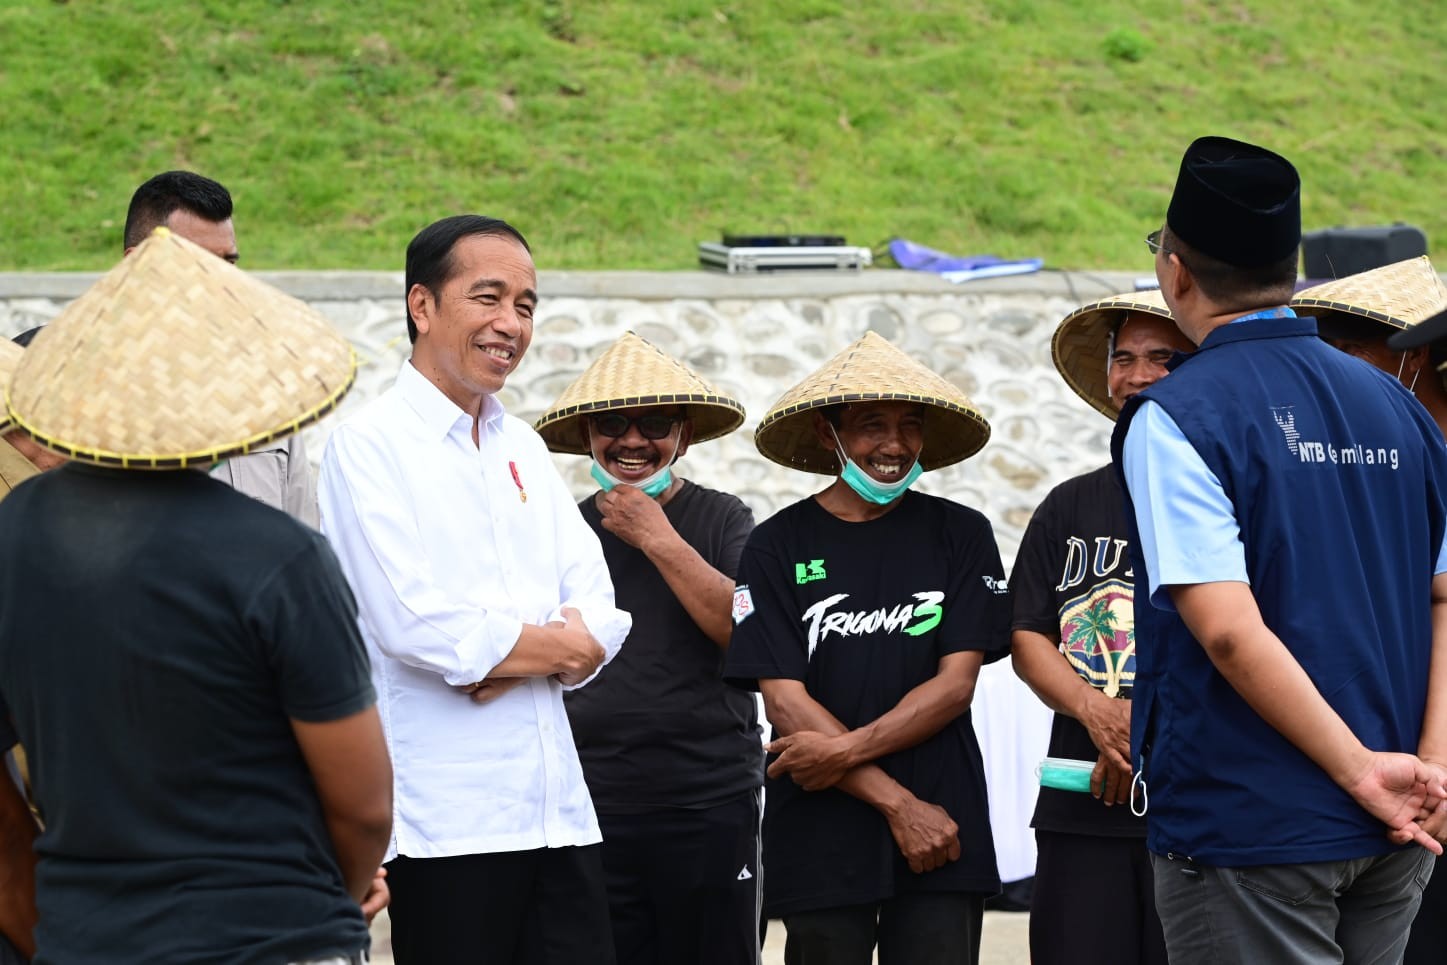 Presiden Jokowi menggunakan baju putih dikelilingi masyarakat